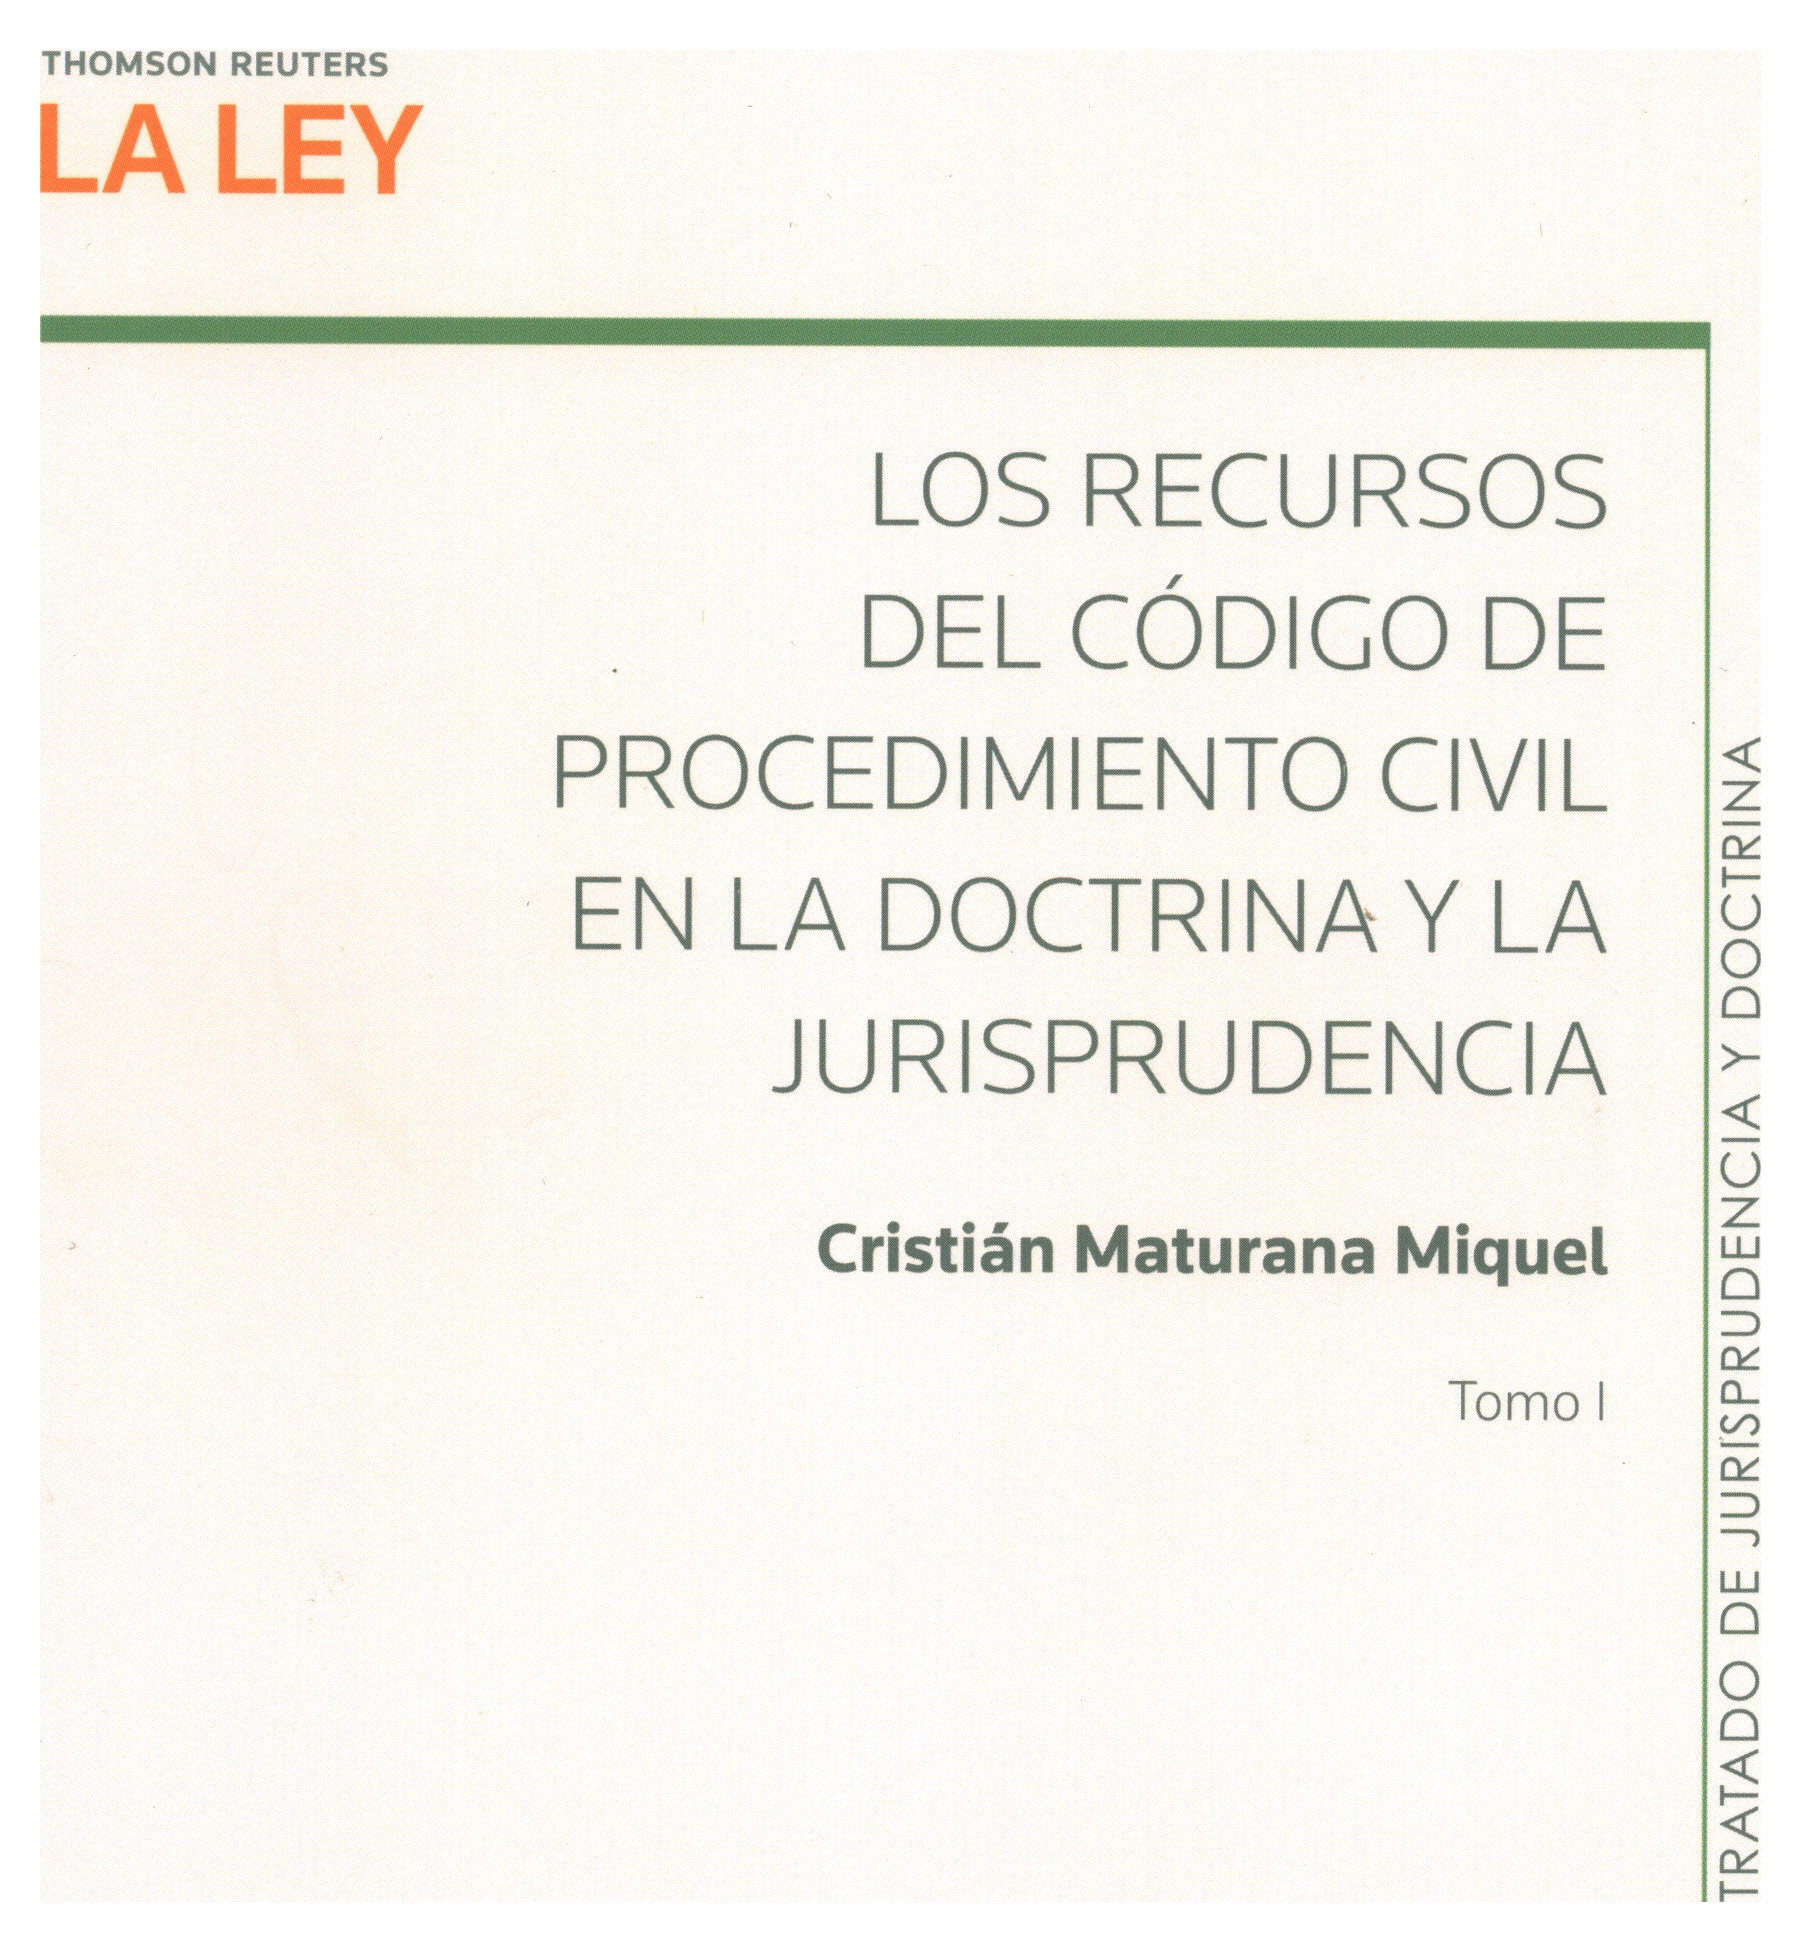 Los recursos del código de procedimiento civil en la doctrina y la jurisprudencia